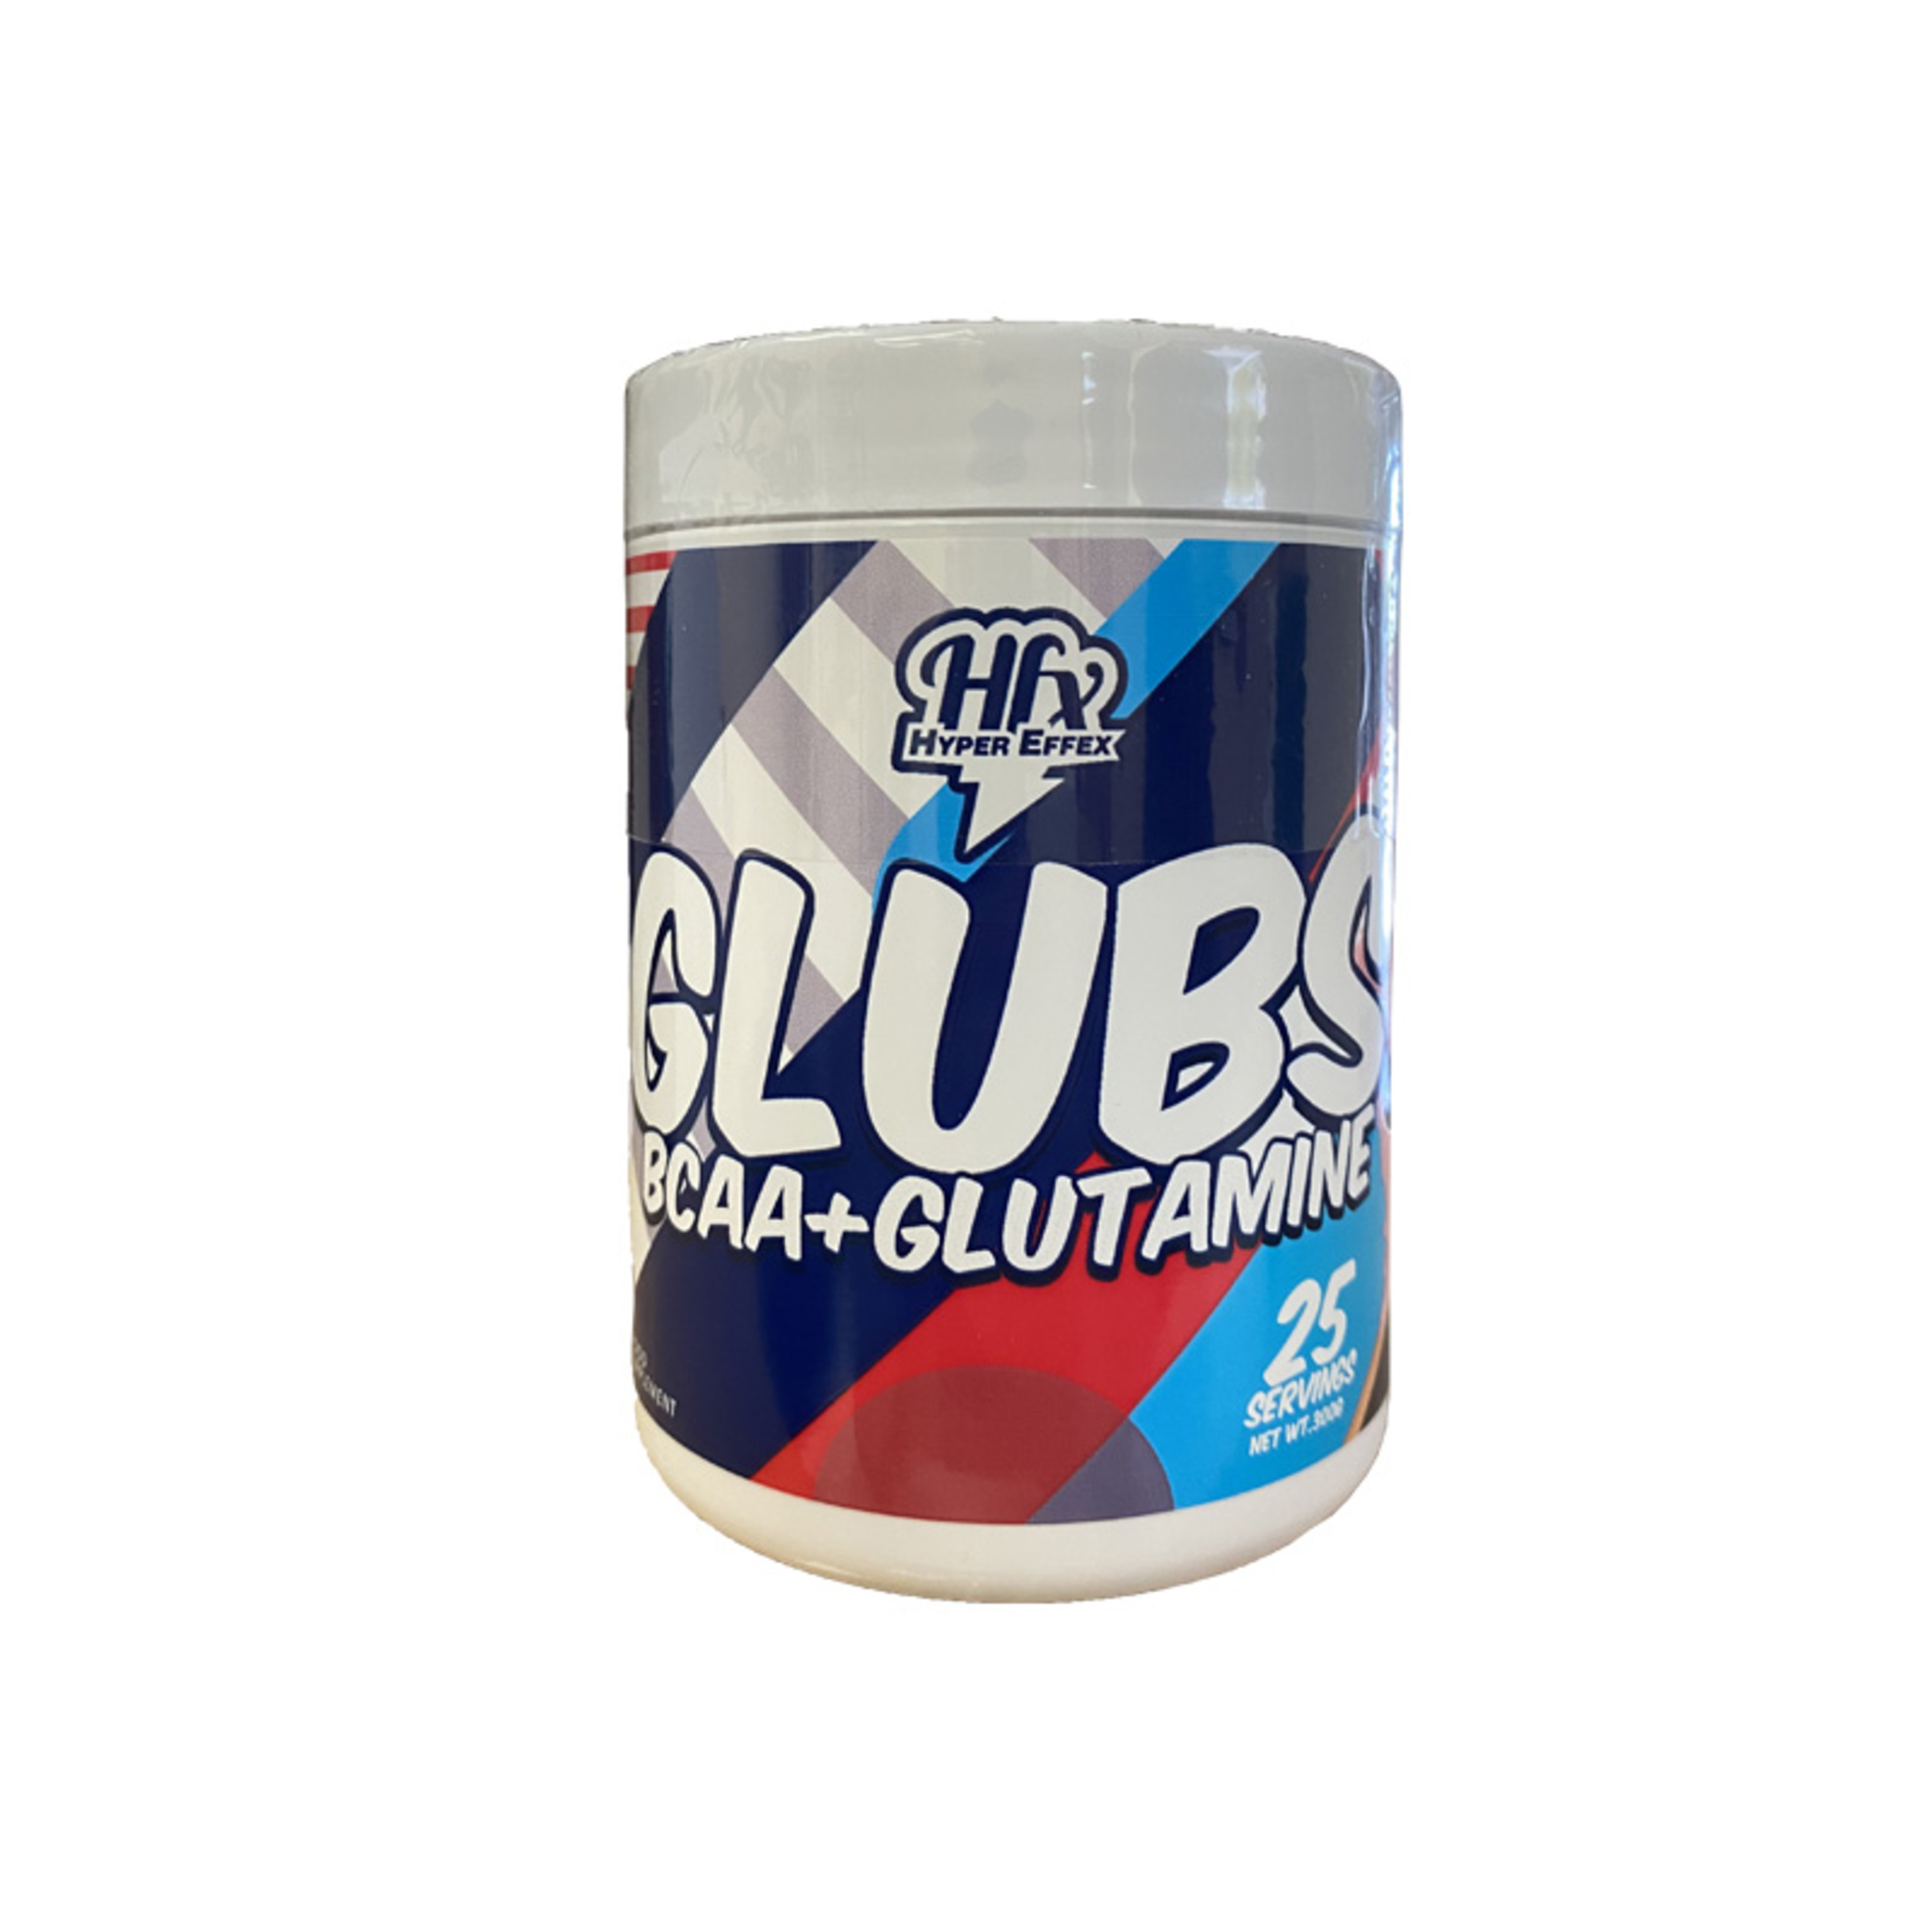 Suplemento Deportivo Glutamina Y Aminoácidos Glubs 300gr - Glubs - Bcaa's + Glutamine De Hypper Effex Combina Aminoácidos Y Glutamina Con Sabor.  MKP